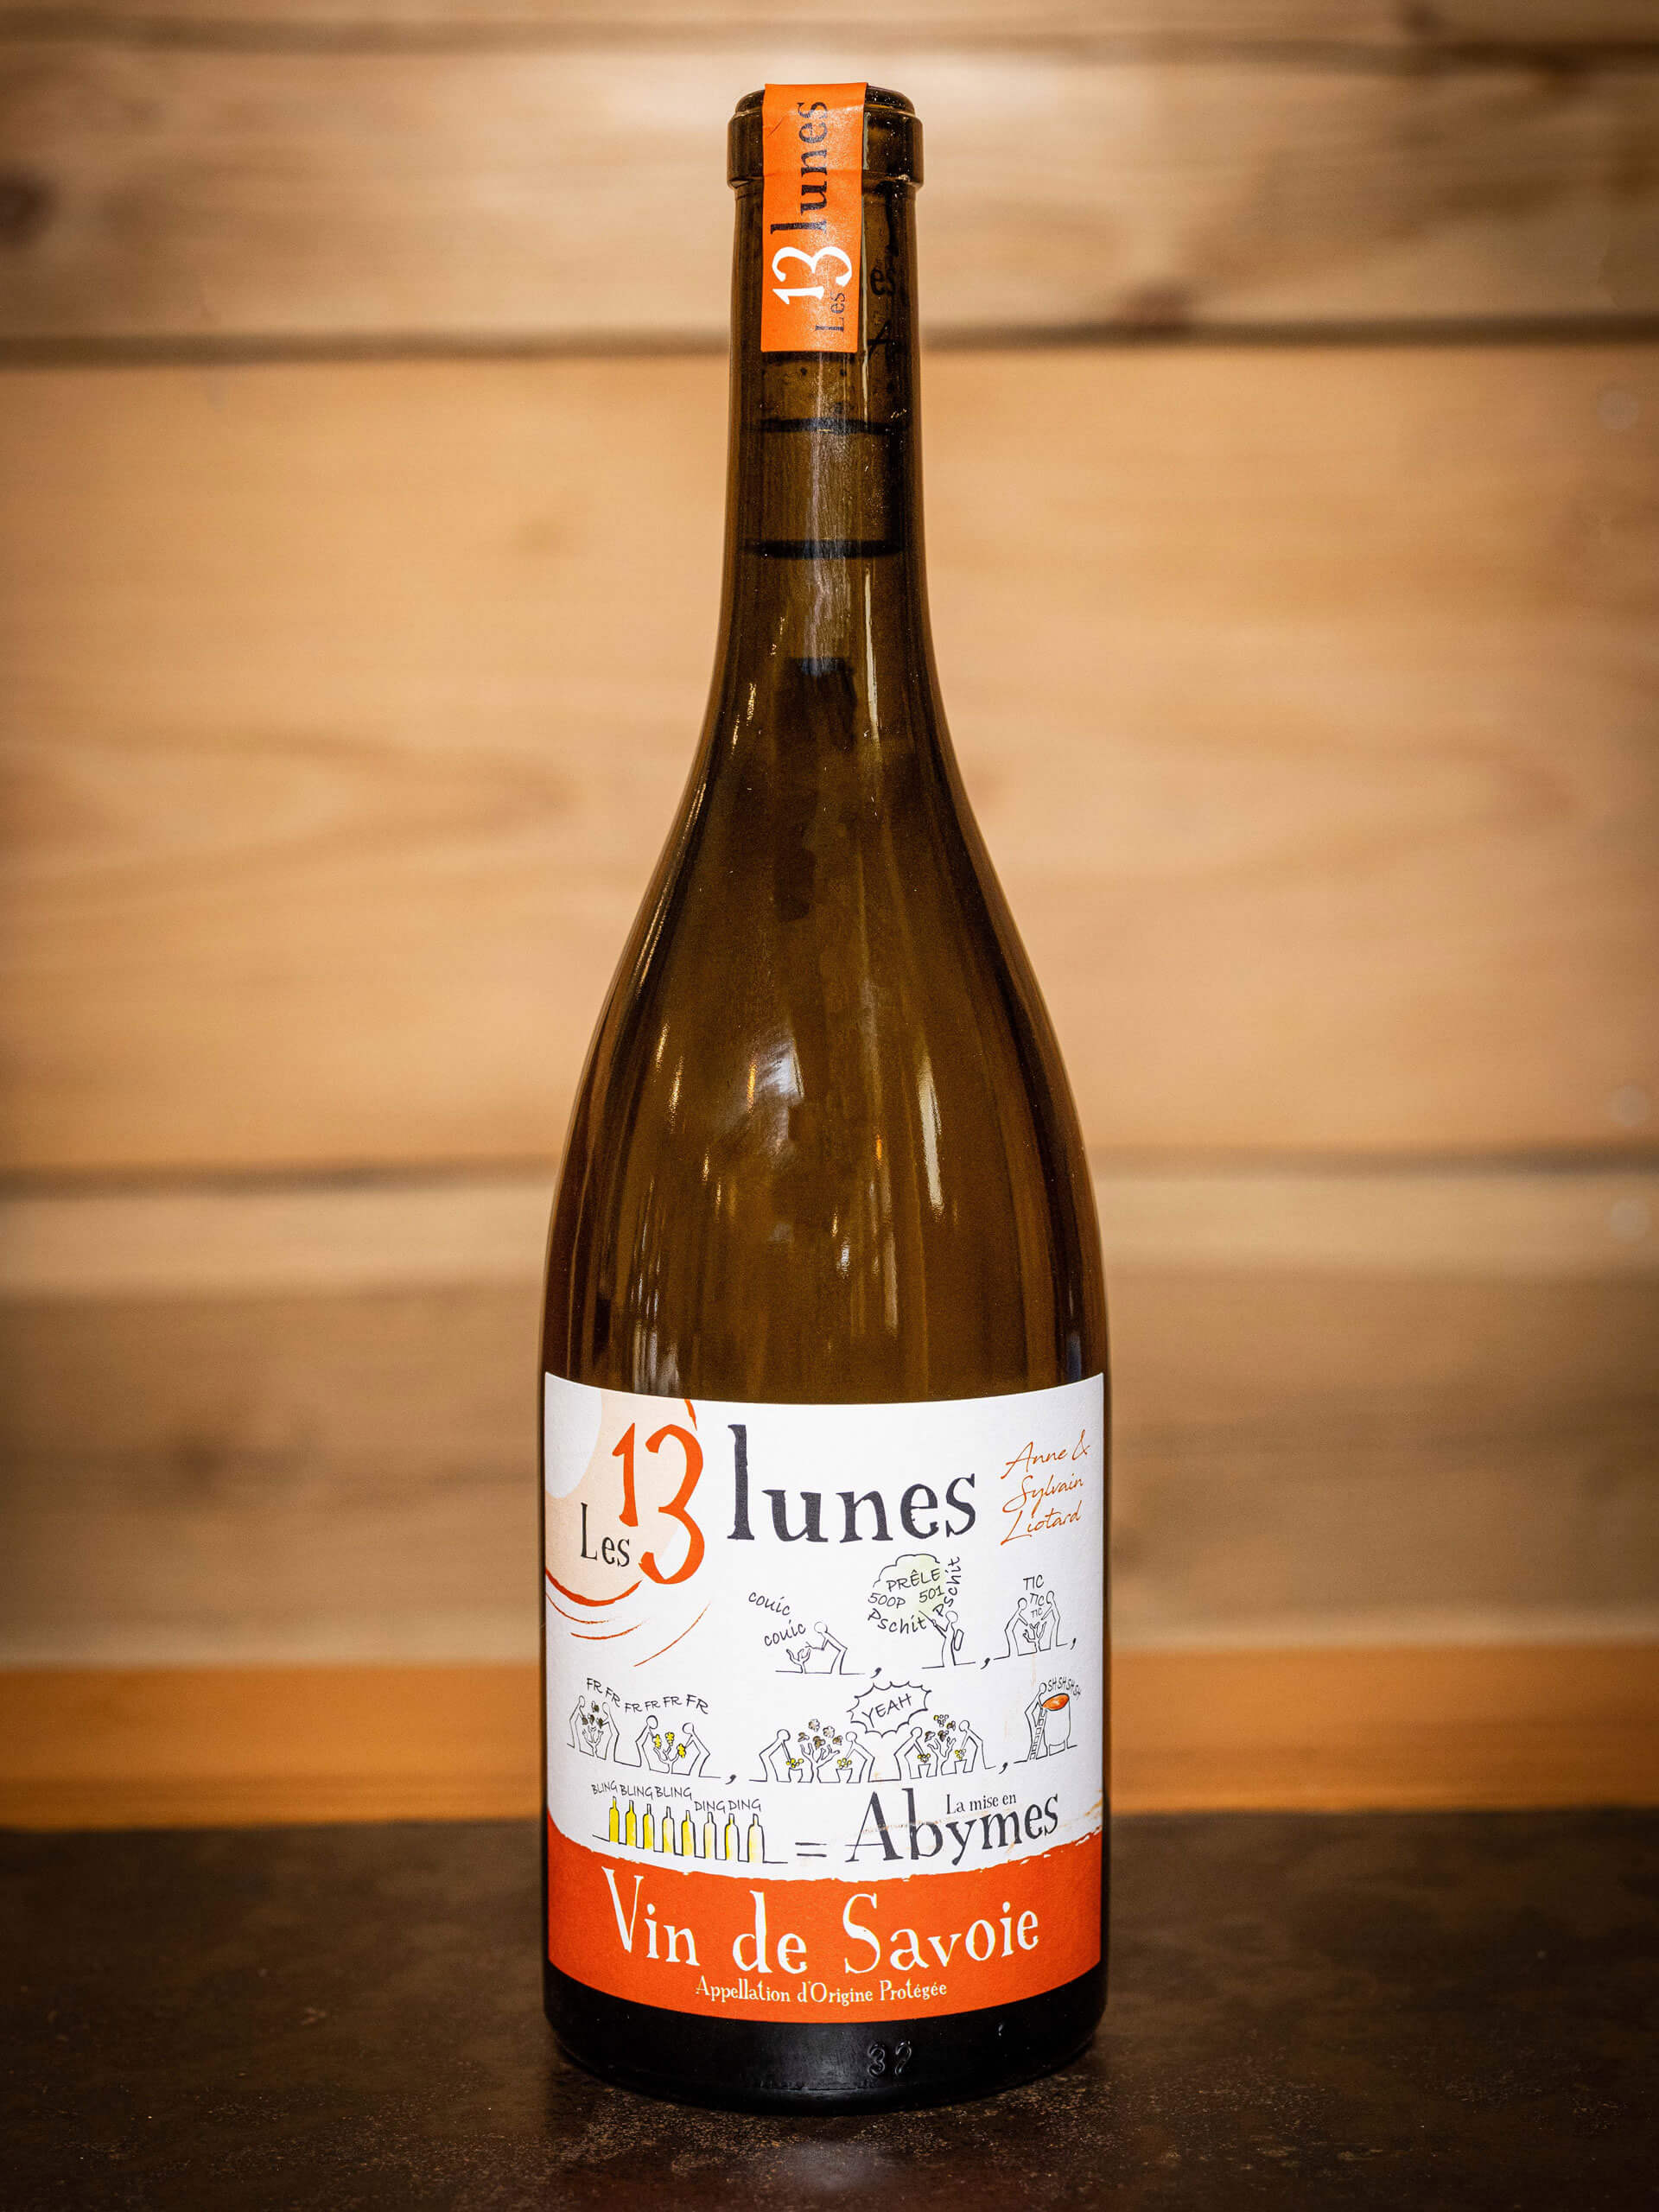 Mise en Abymes vin blanc | Domaine des 13 Lunes